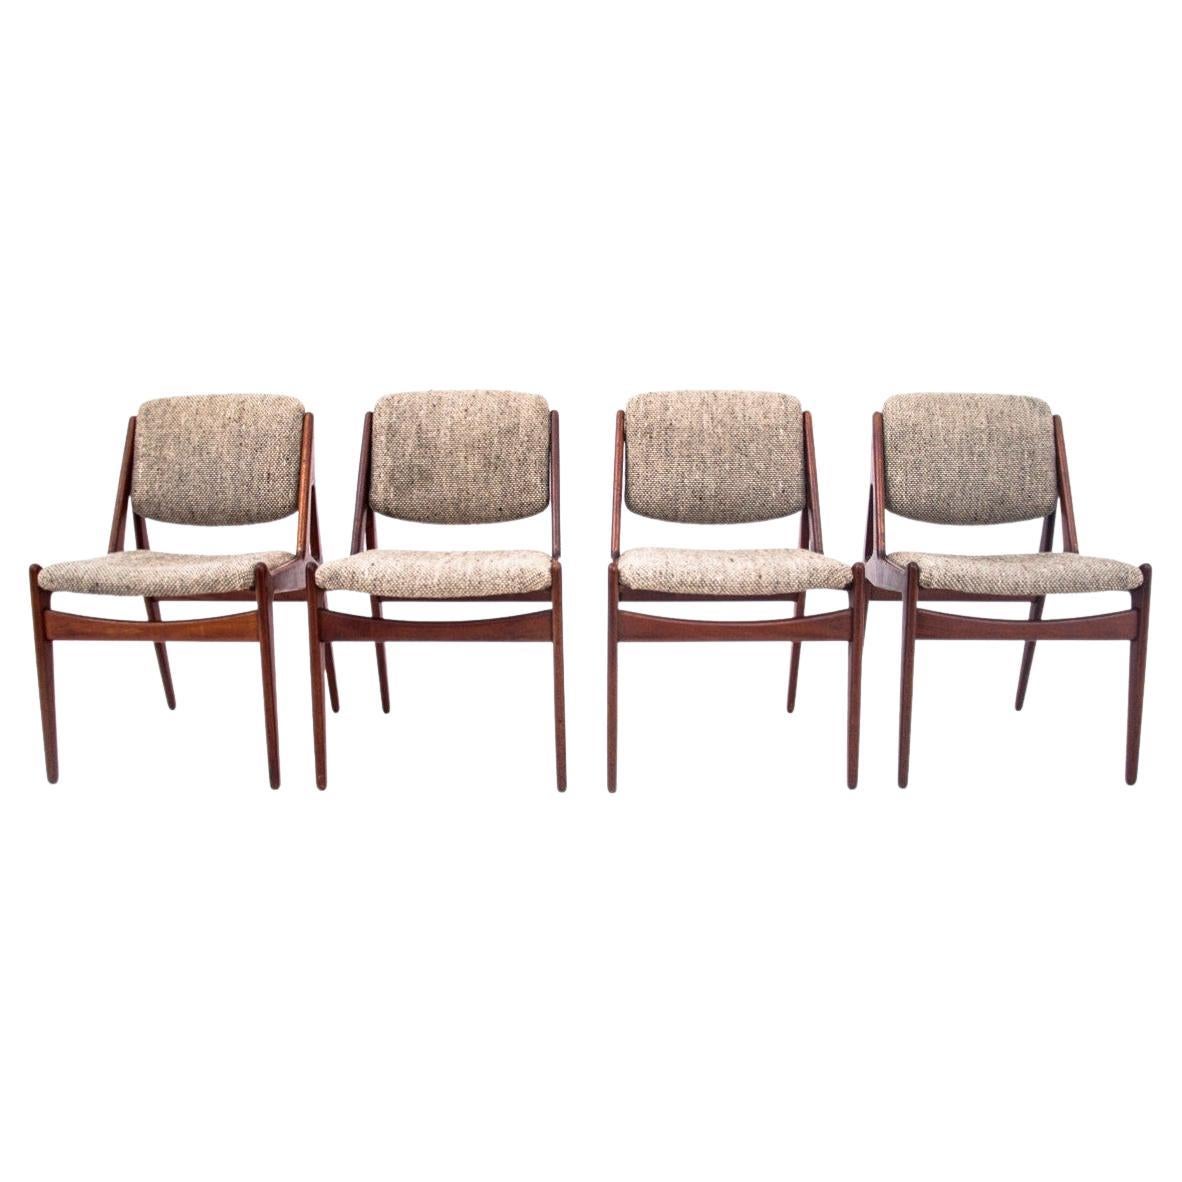 Set of Four "Ella" Chairs by Arne Vodder for Vamo Møbelfabrik, Denmark, 1960s